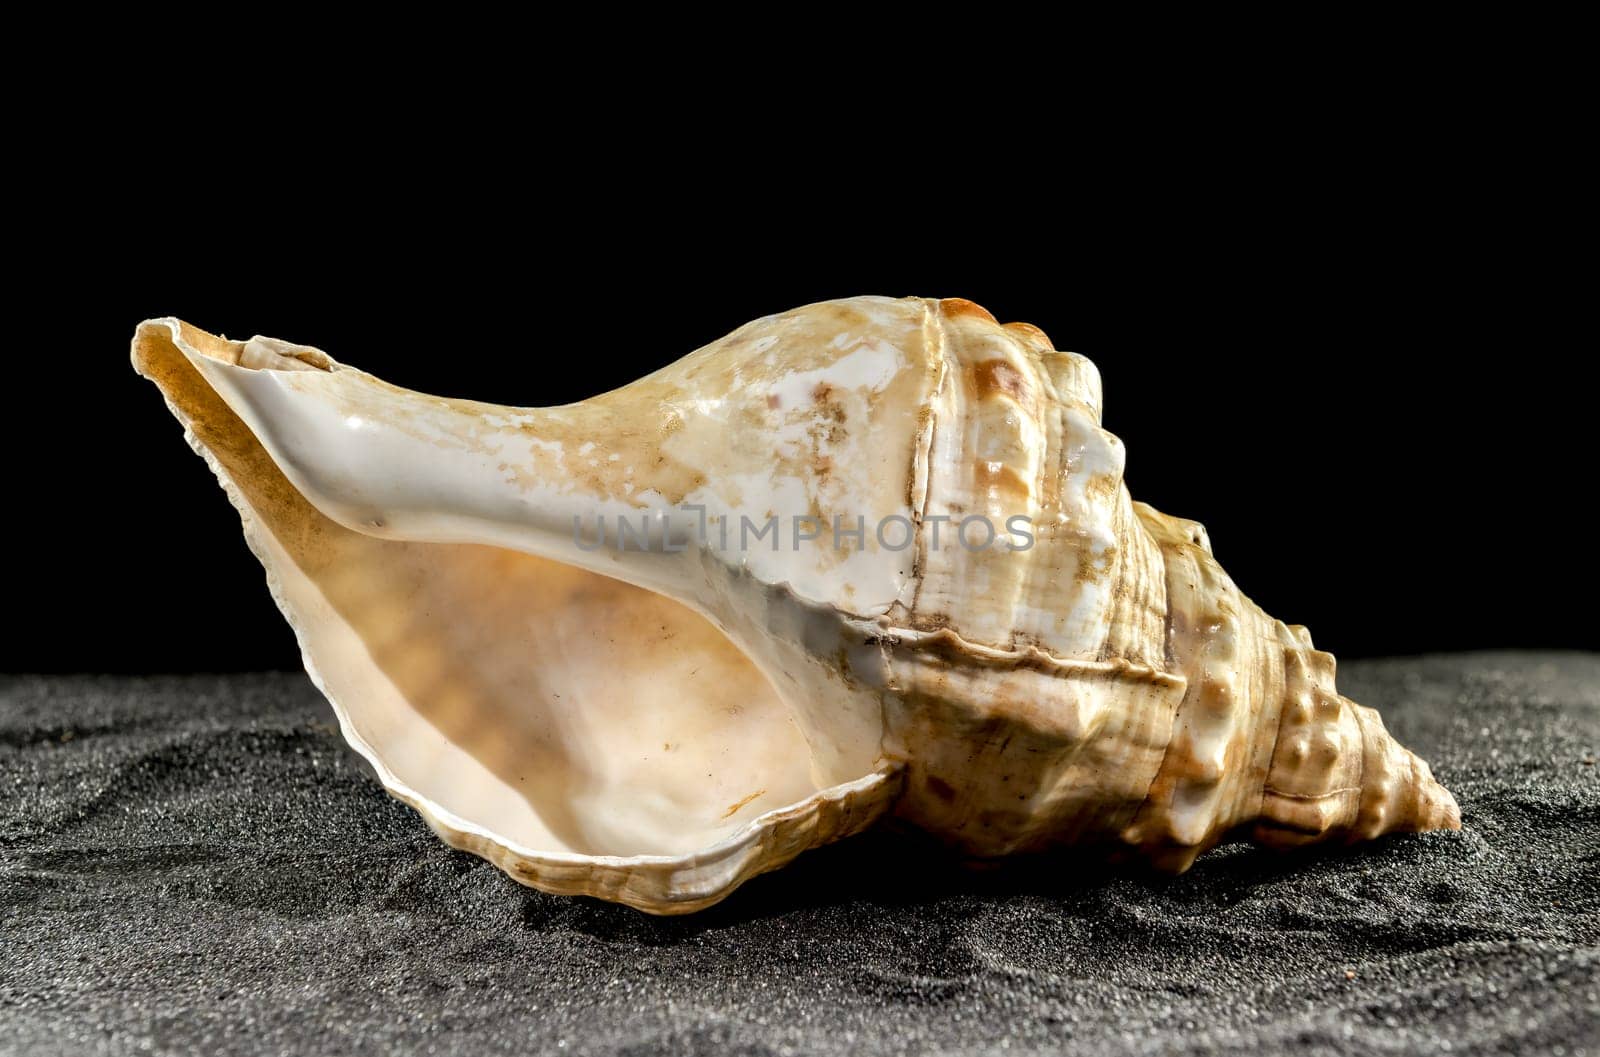 Big Pleuroploca trapezium or trapezium horse conch sea shell on a black sand background